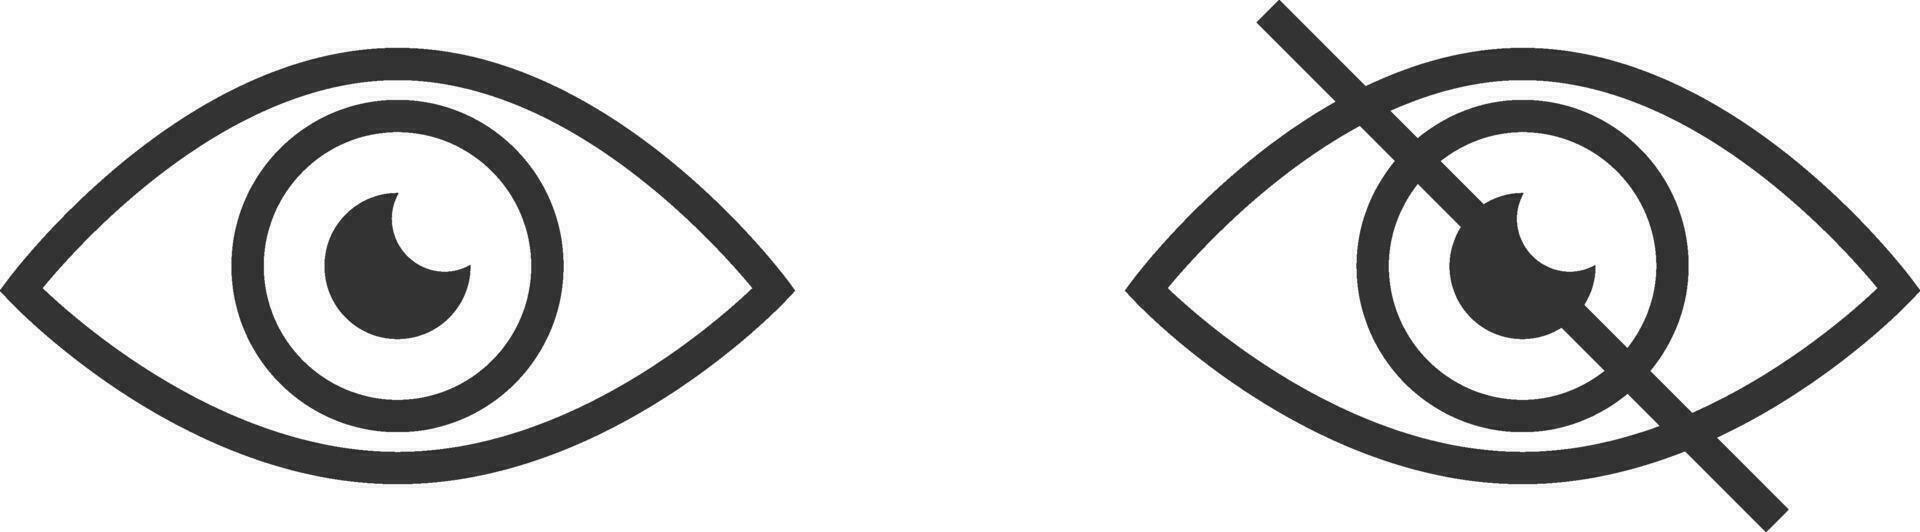 tonen wachtwoord icoon, oog symbool. vector visie verbergen van kijk maar icoon. geheim visie web ontwerp element.